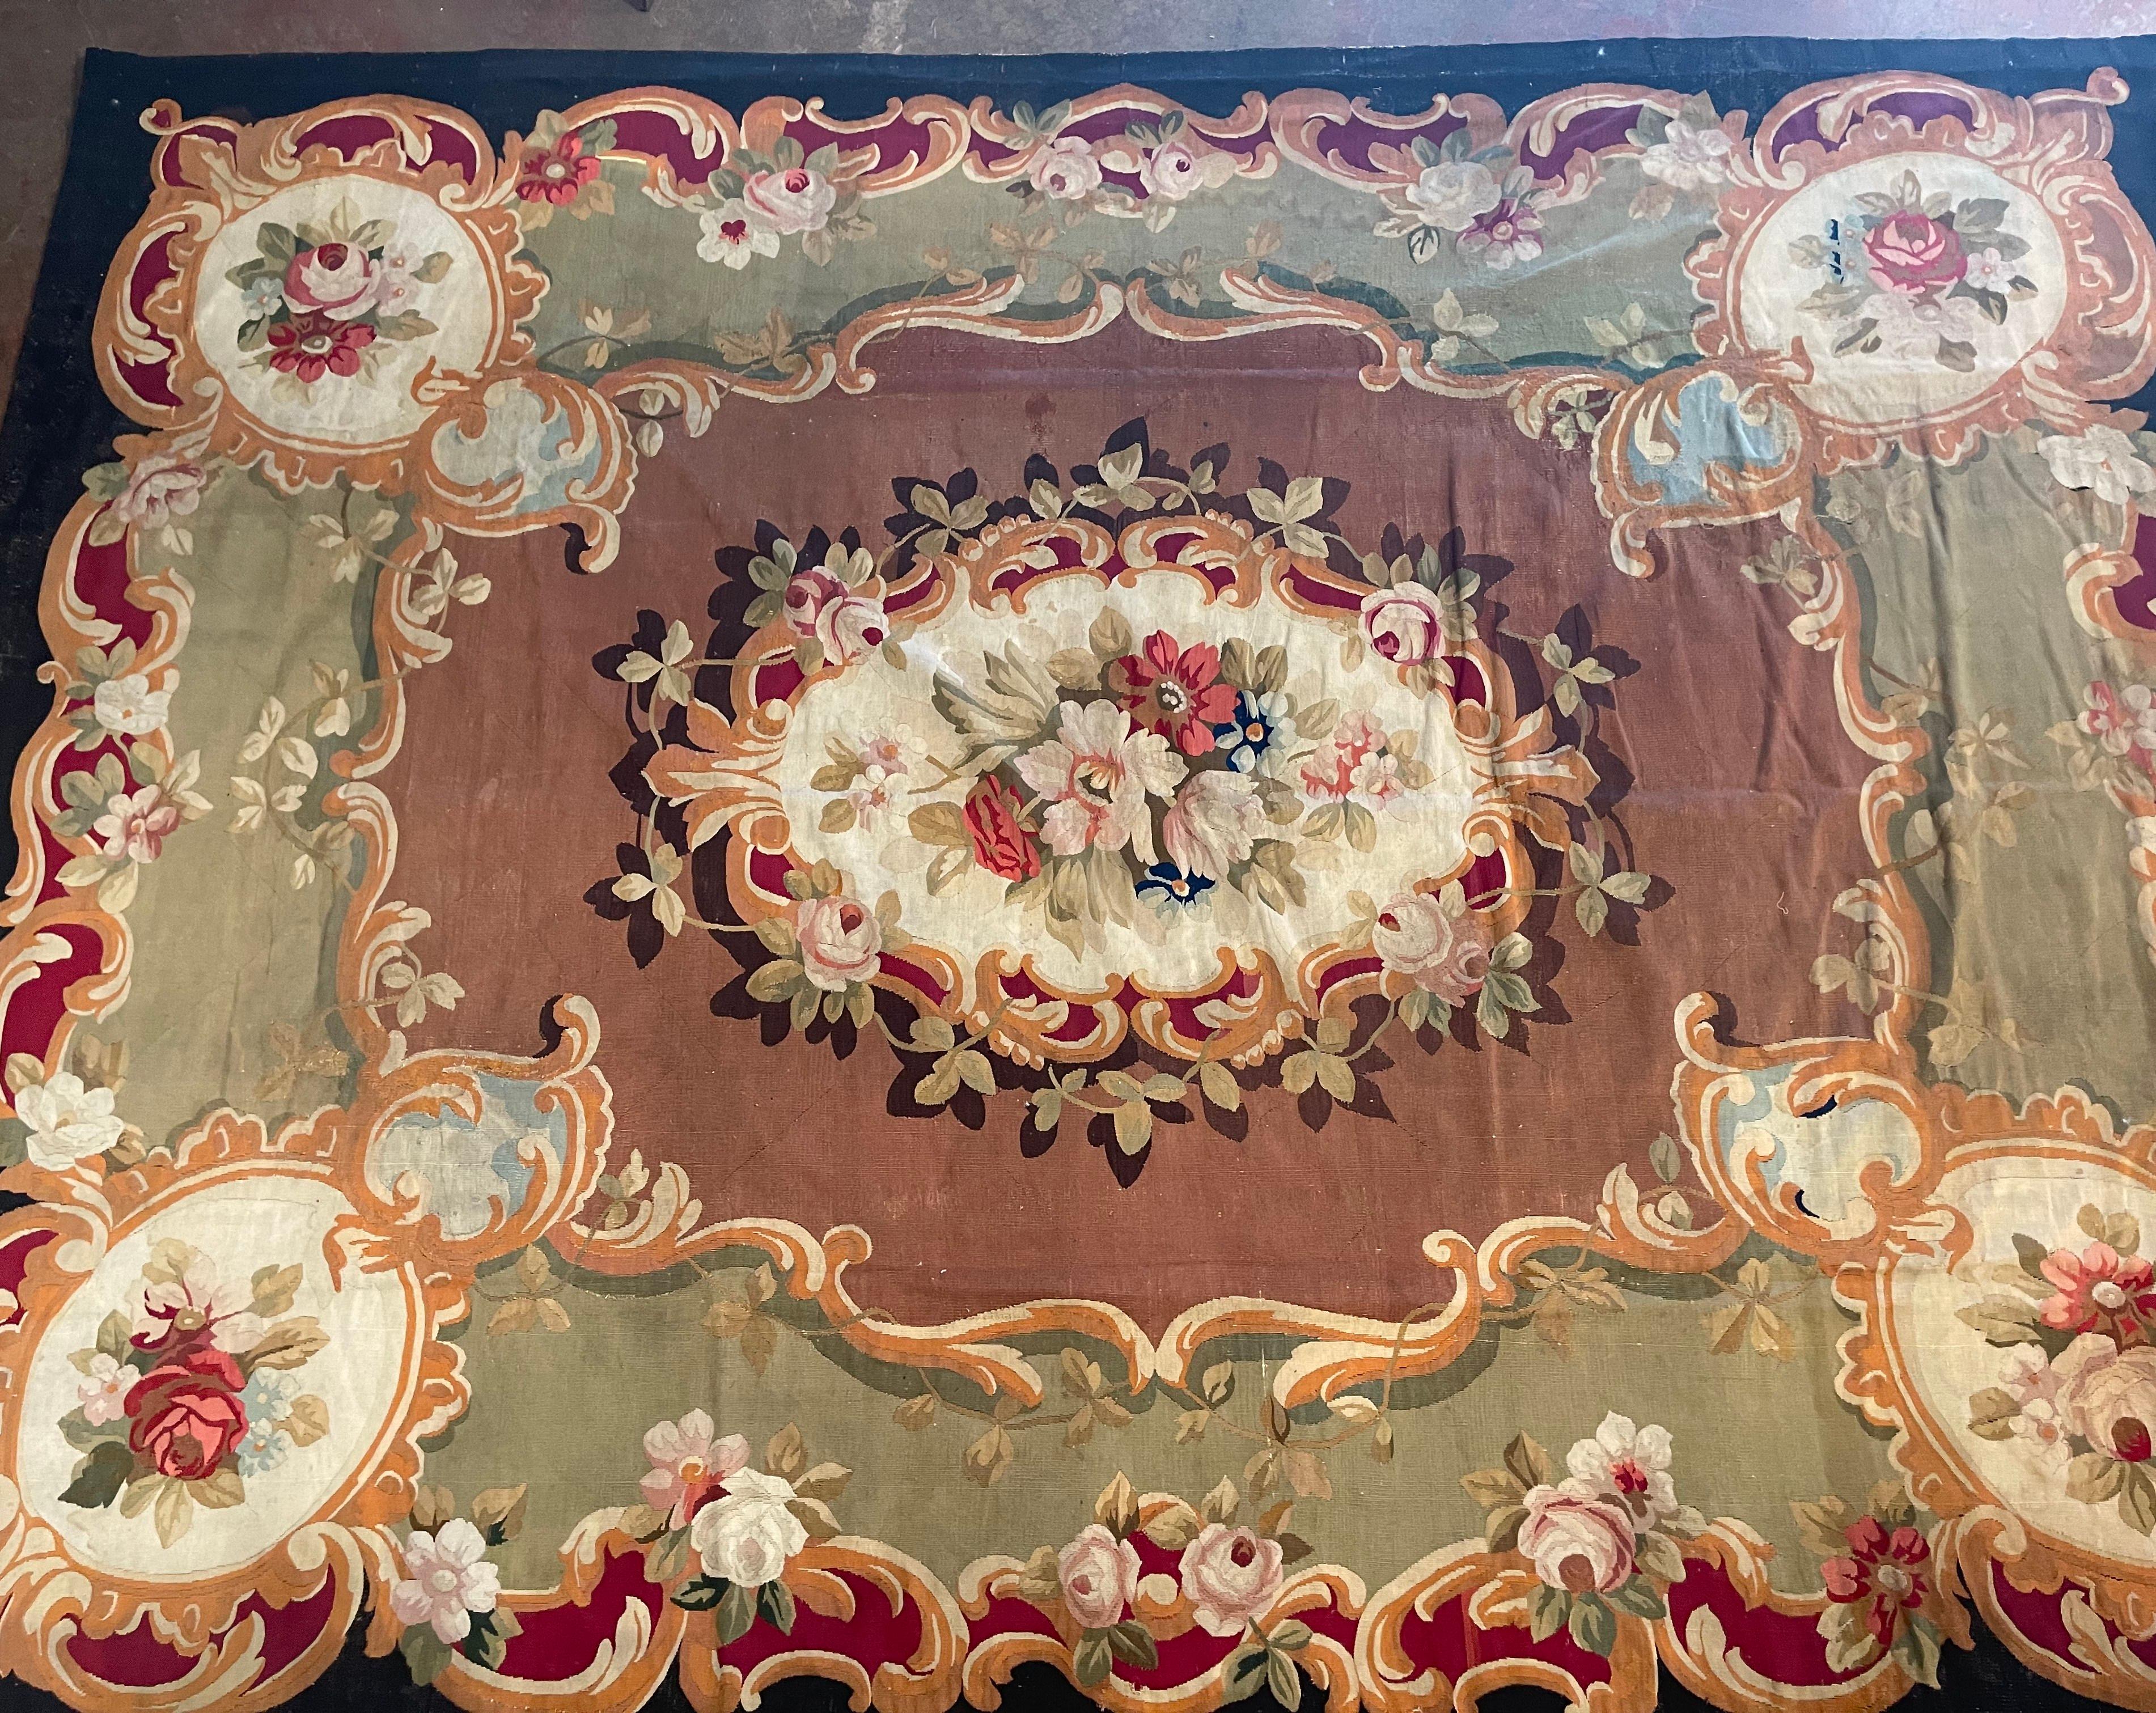 Dekorieren Sie ein Ess- oder Wohnzimmer mit diesem wunderschön erhaltenen antiken Aubusson-Teppich, der direkt aus einem Schloss in Südfrankreich stammt. Der 13 x 10 cm große, farbenfrohe Teppich wurde um 1870 in Aubusson von Hand gewebt und weist